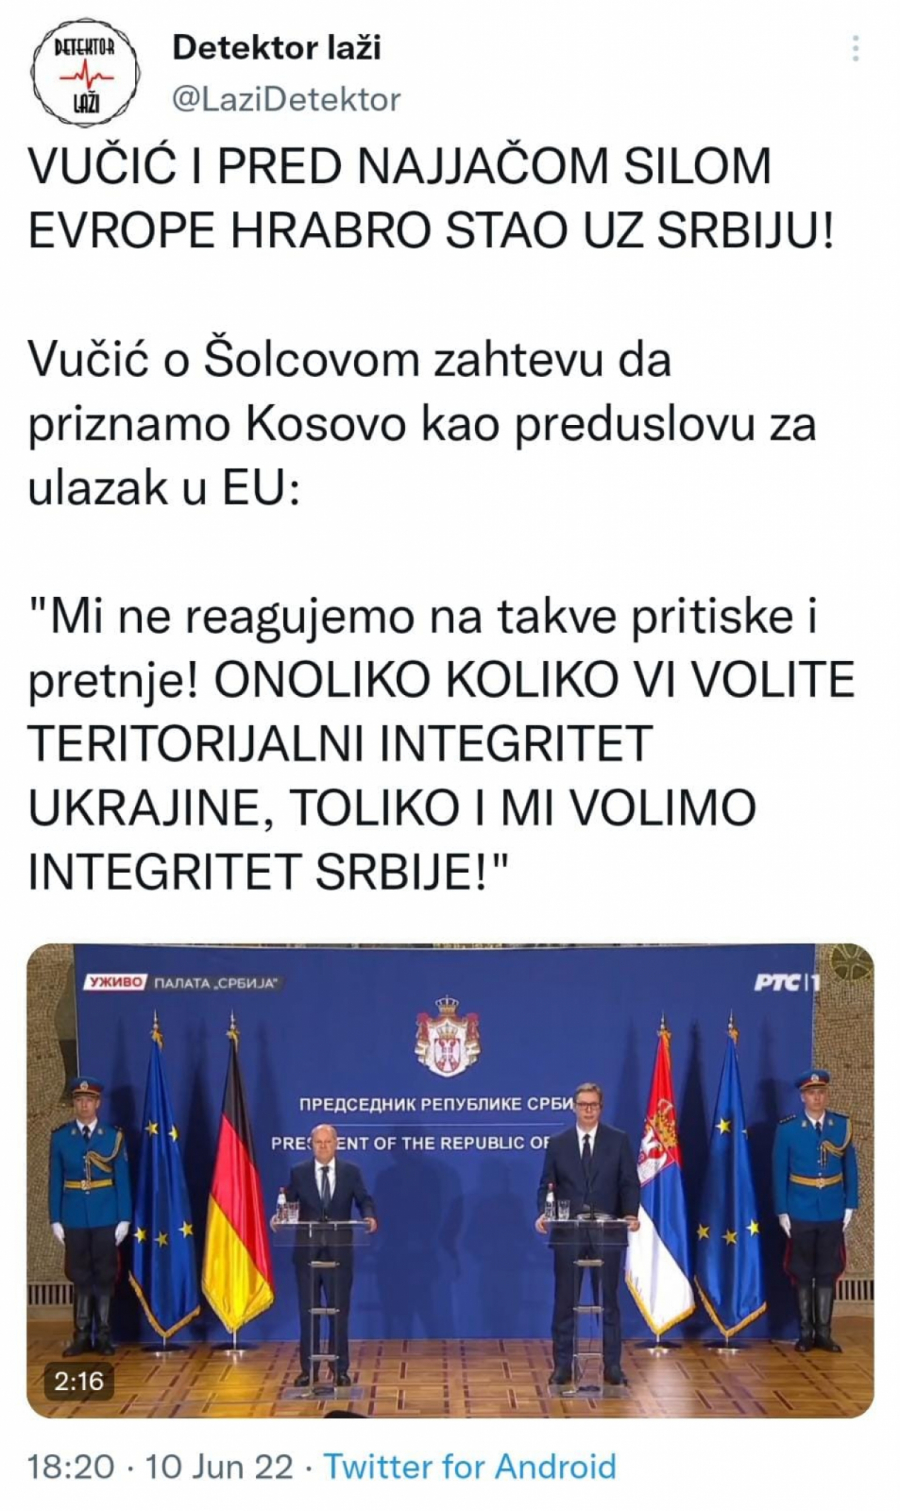 VUČIĆ I PRED NAJJAČOM SILOM EVROPE HRABRO STAO UZ SVOJU ZEMLJU Predsednik pokazao kako se brani Srbija i poručio Šolcu: Ne reagujemo na pritiske i pretnje